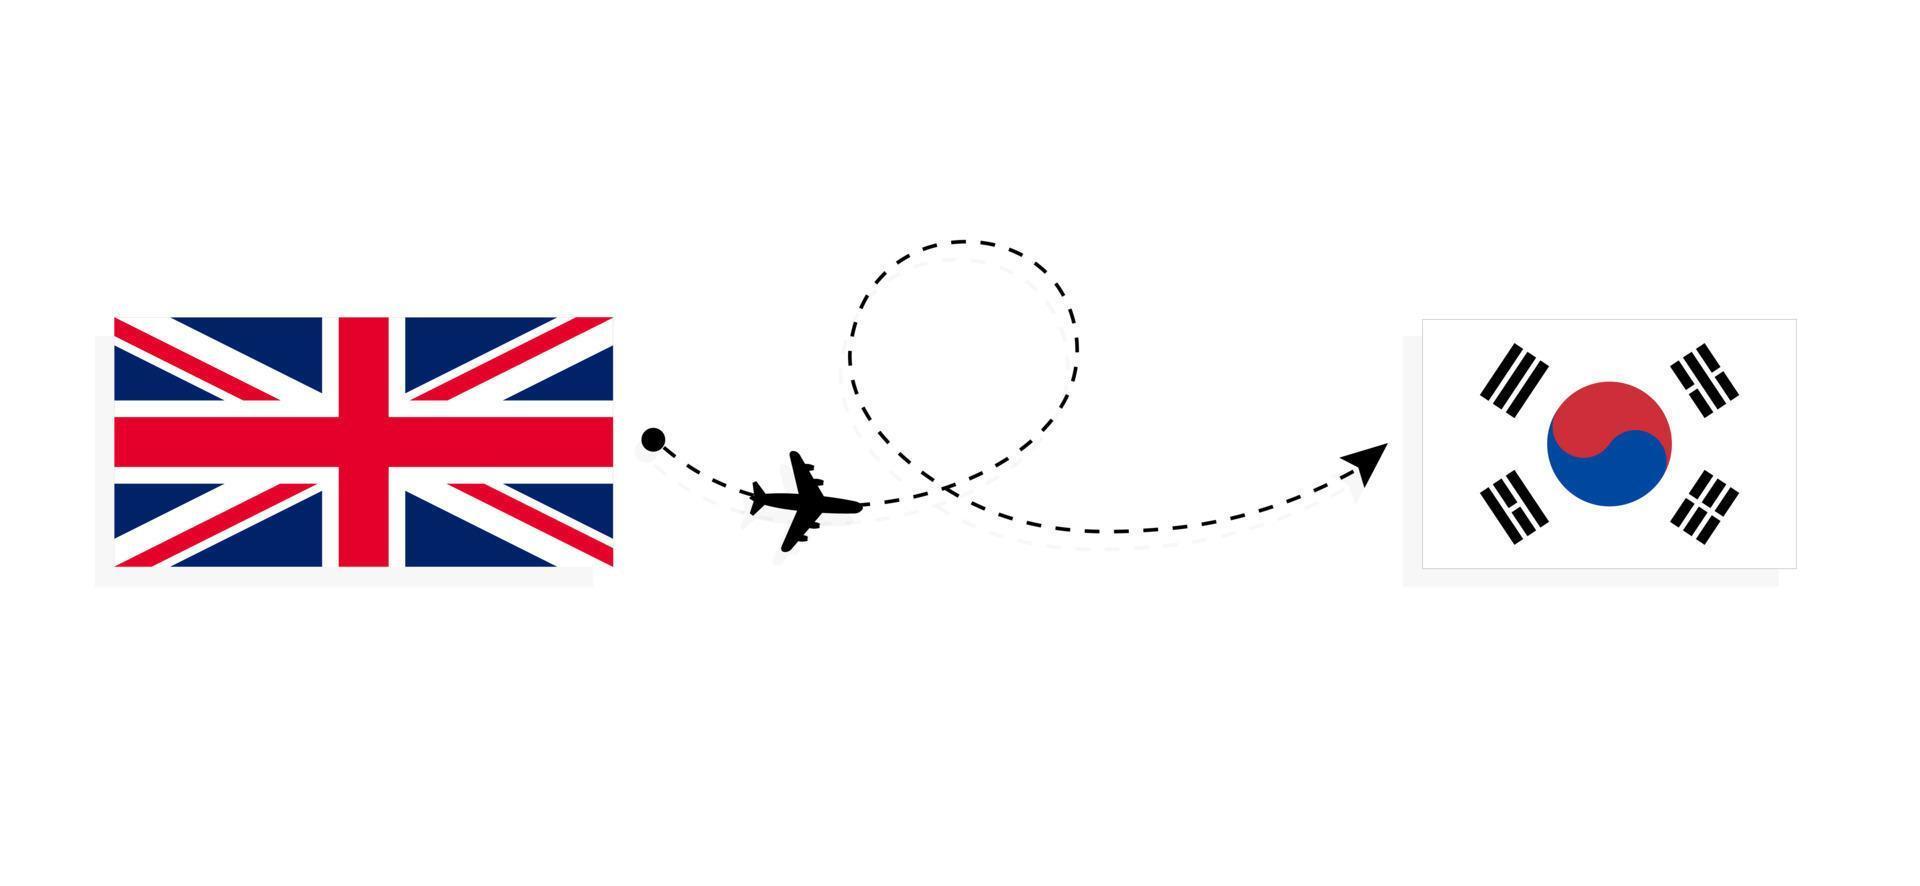 flyg och resor från Storbritannien till Sydkorea med passagerarflygplan vektor